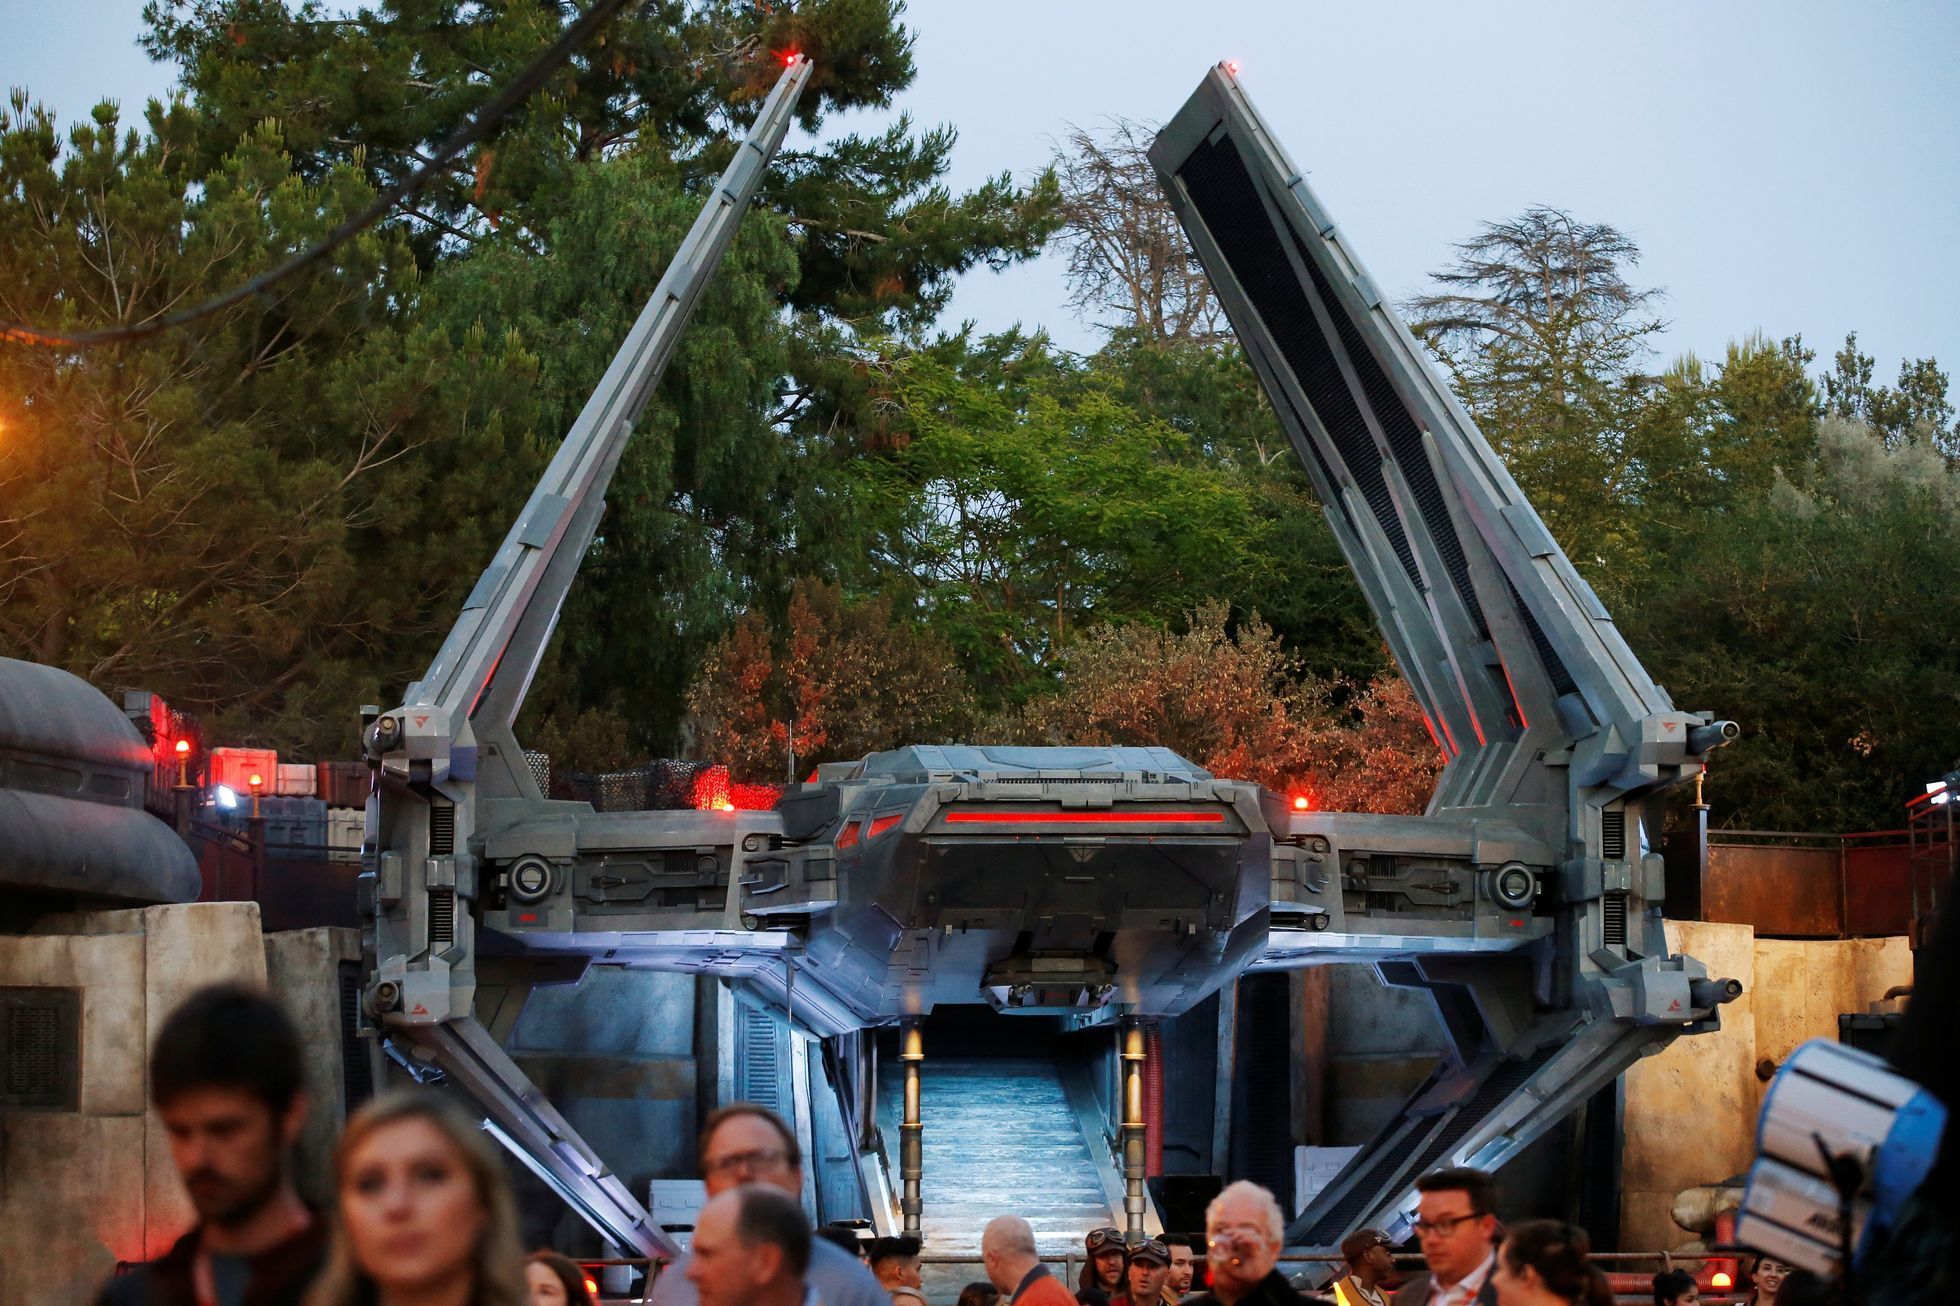 Star Wars: Galaxy's Edge at Disneyland Park in Anaheim